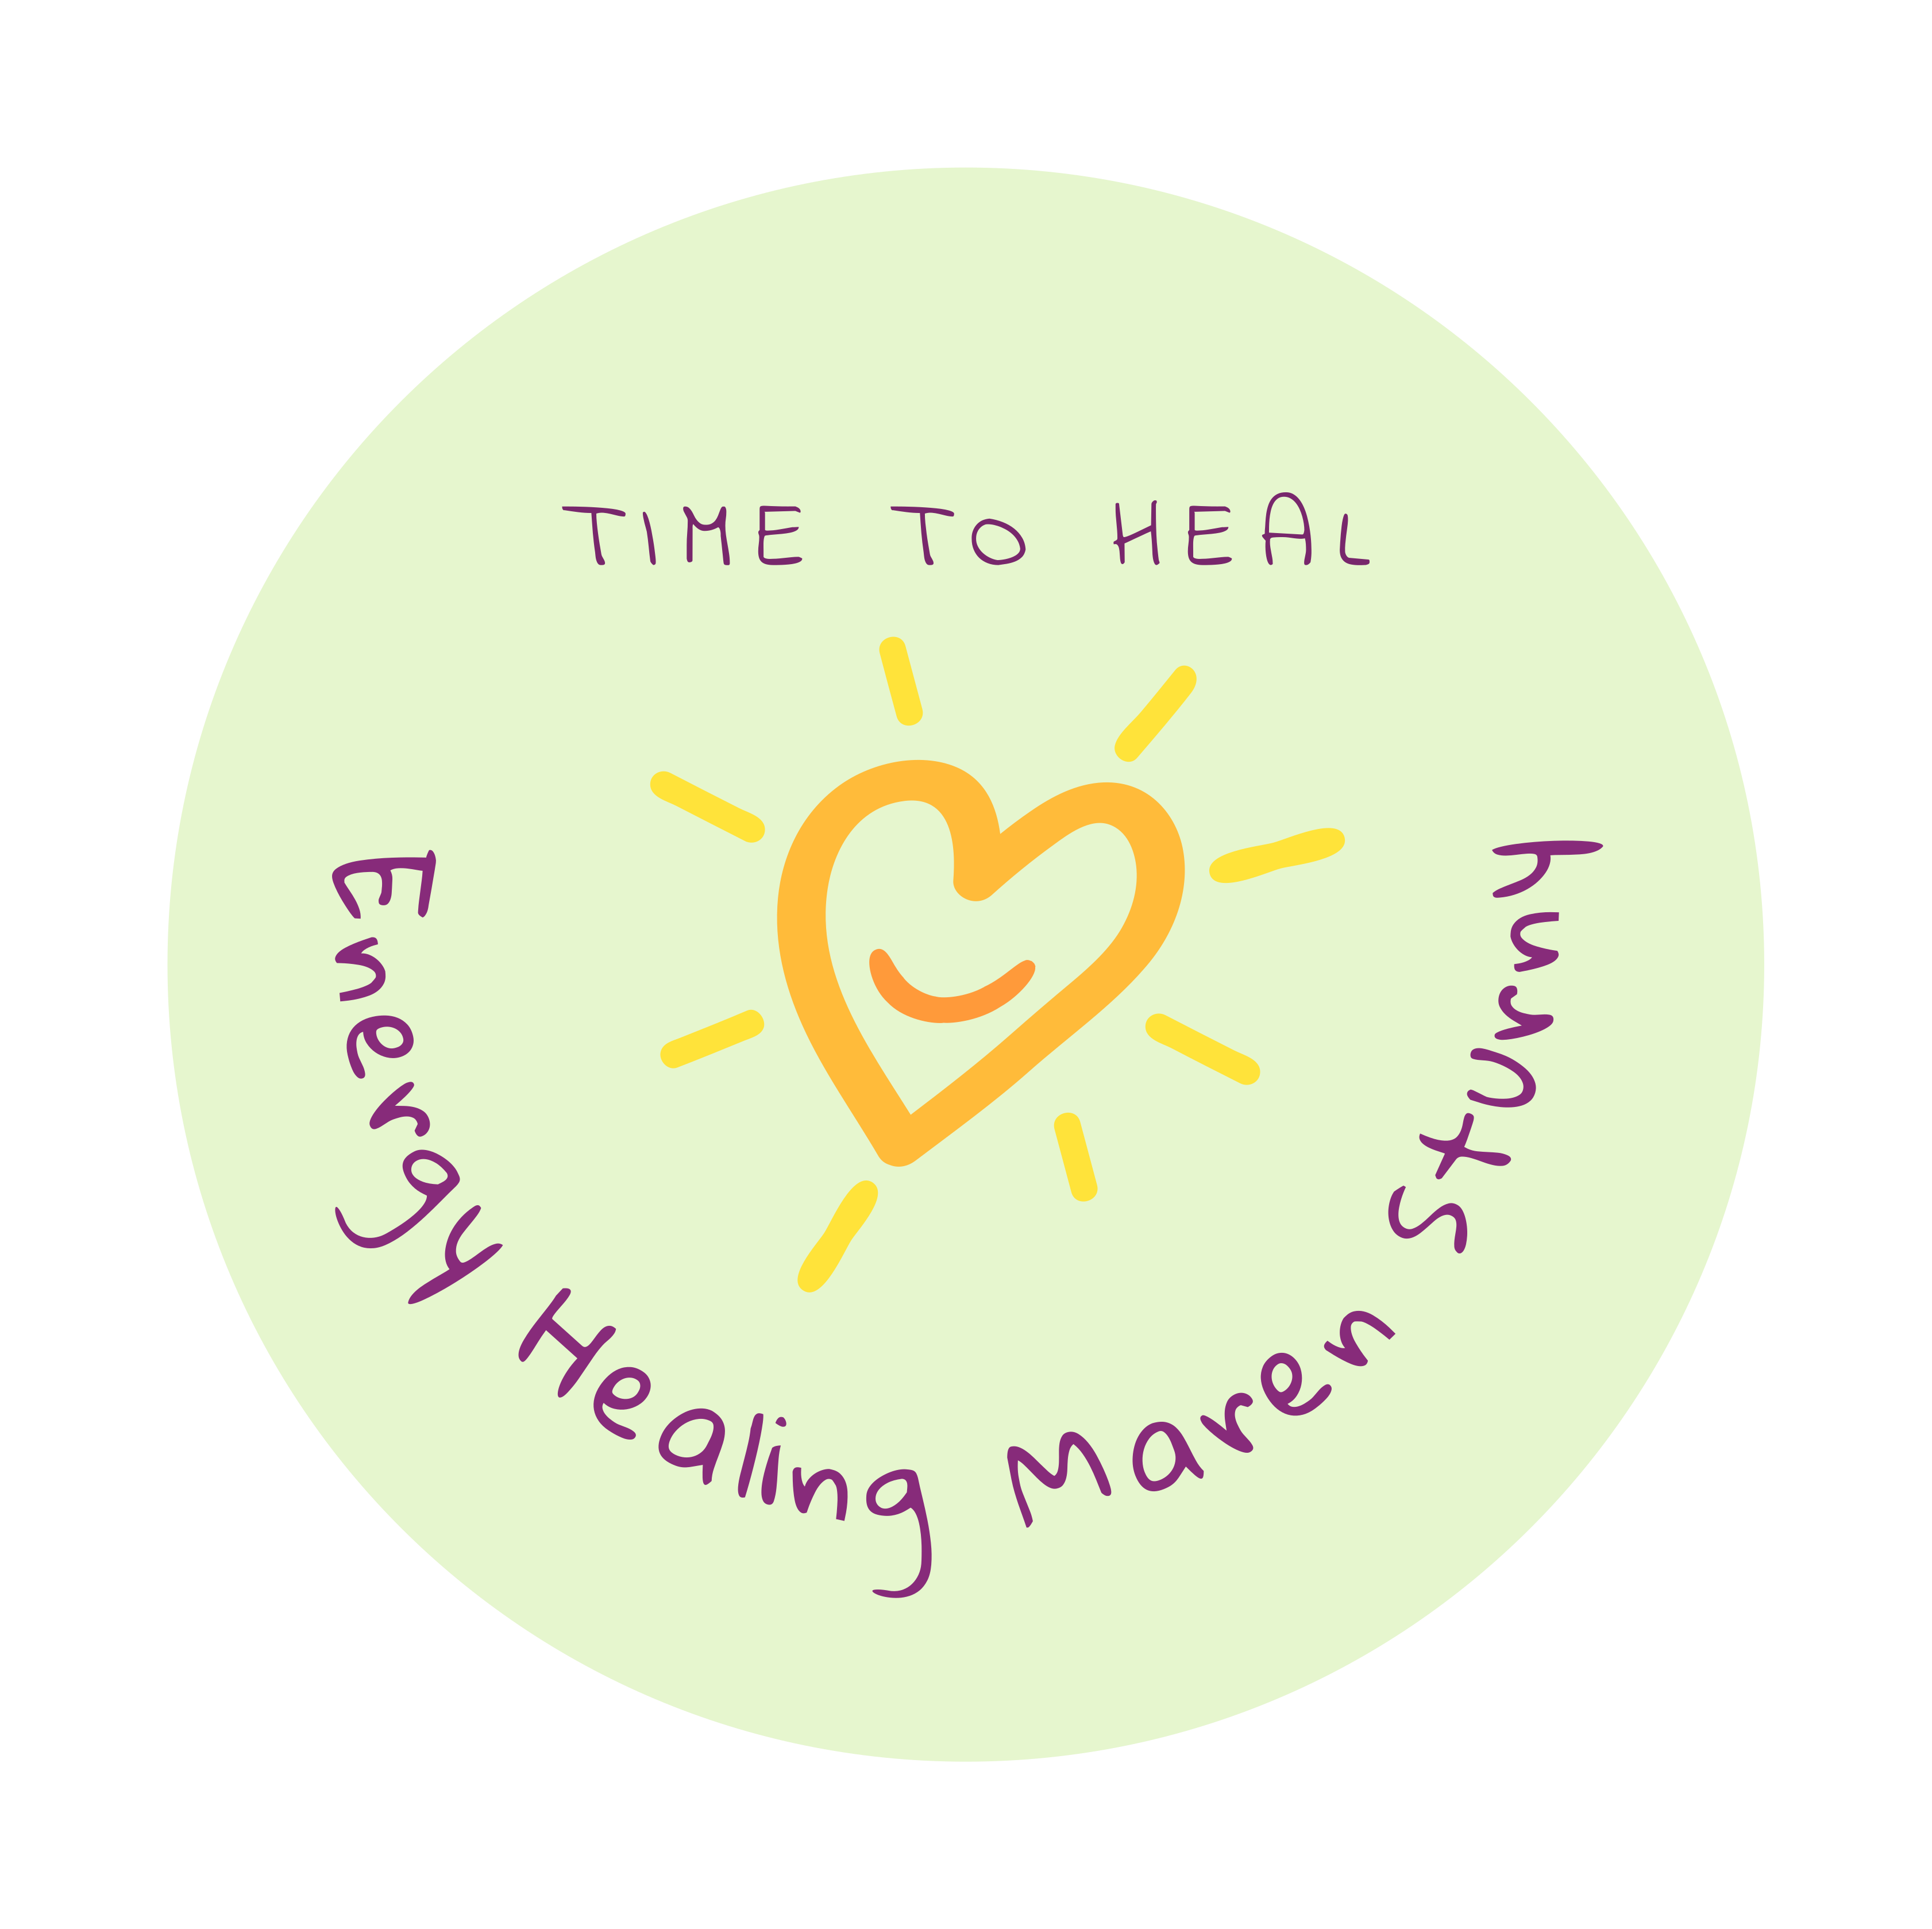 Time to Heal Energy Healing Spiritual Coaching Zeit für Heilung Energetische Heilung spirituelles Coaching Maren Sturny amazinGRACE Spirit Coach